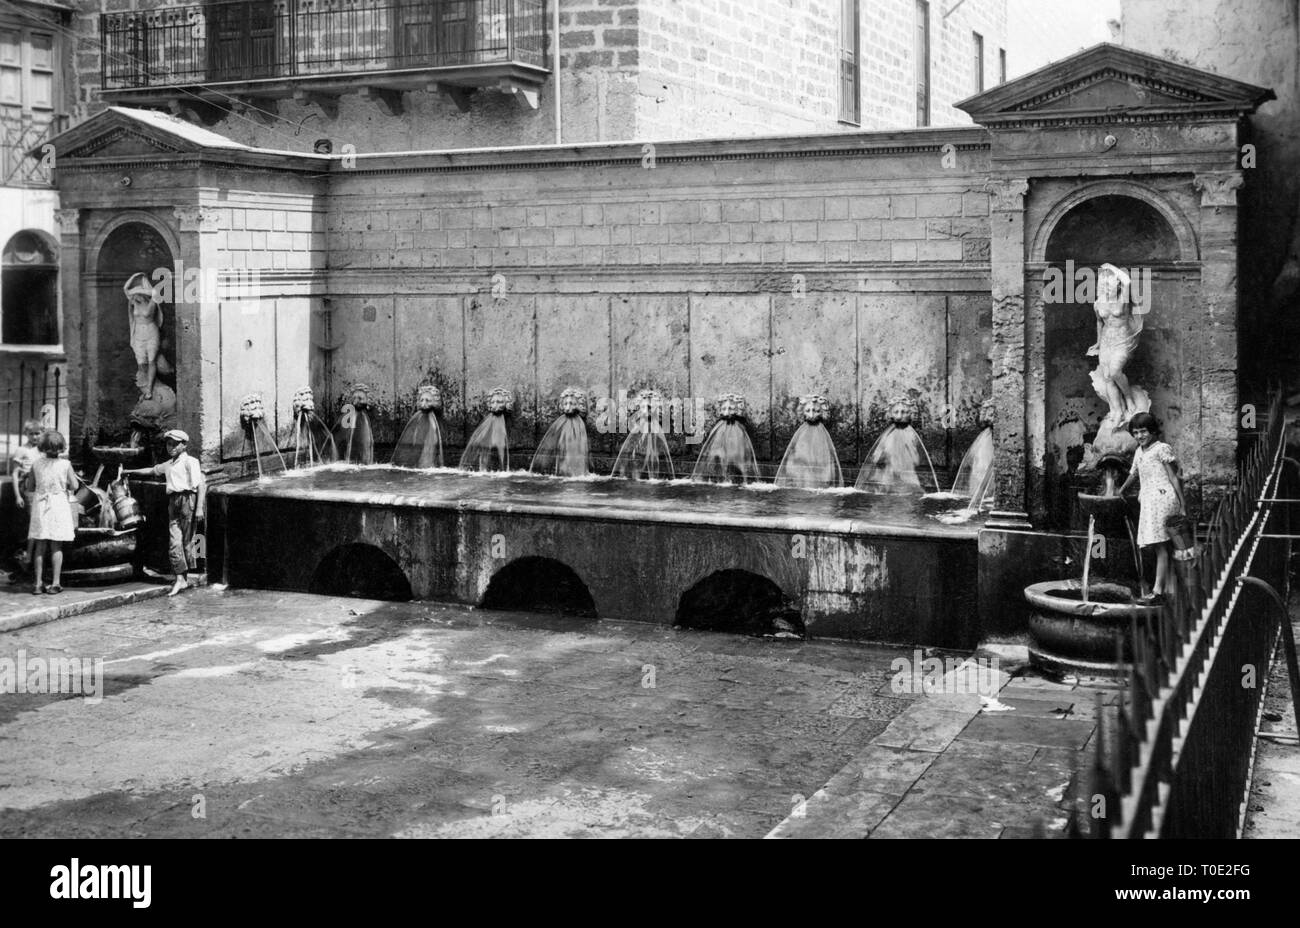 fontana grande, misilmeri, sicily 1934 Stock Photo - Alamy